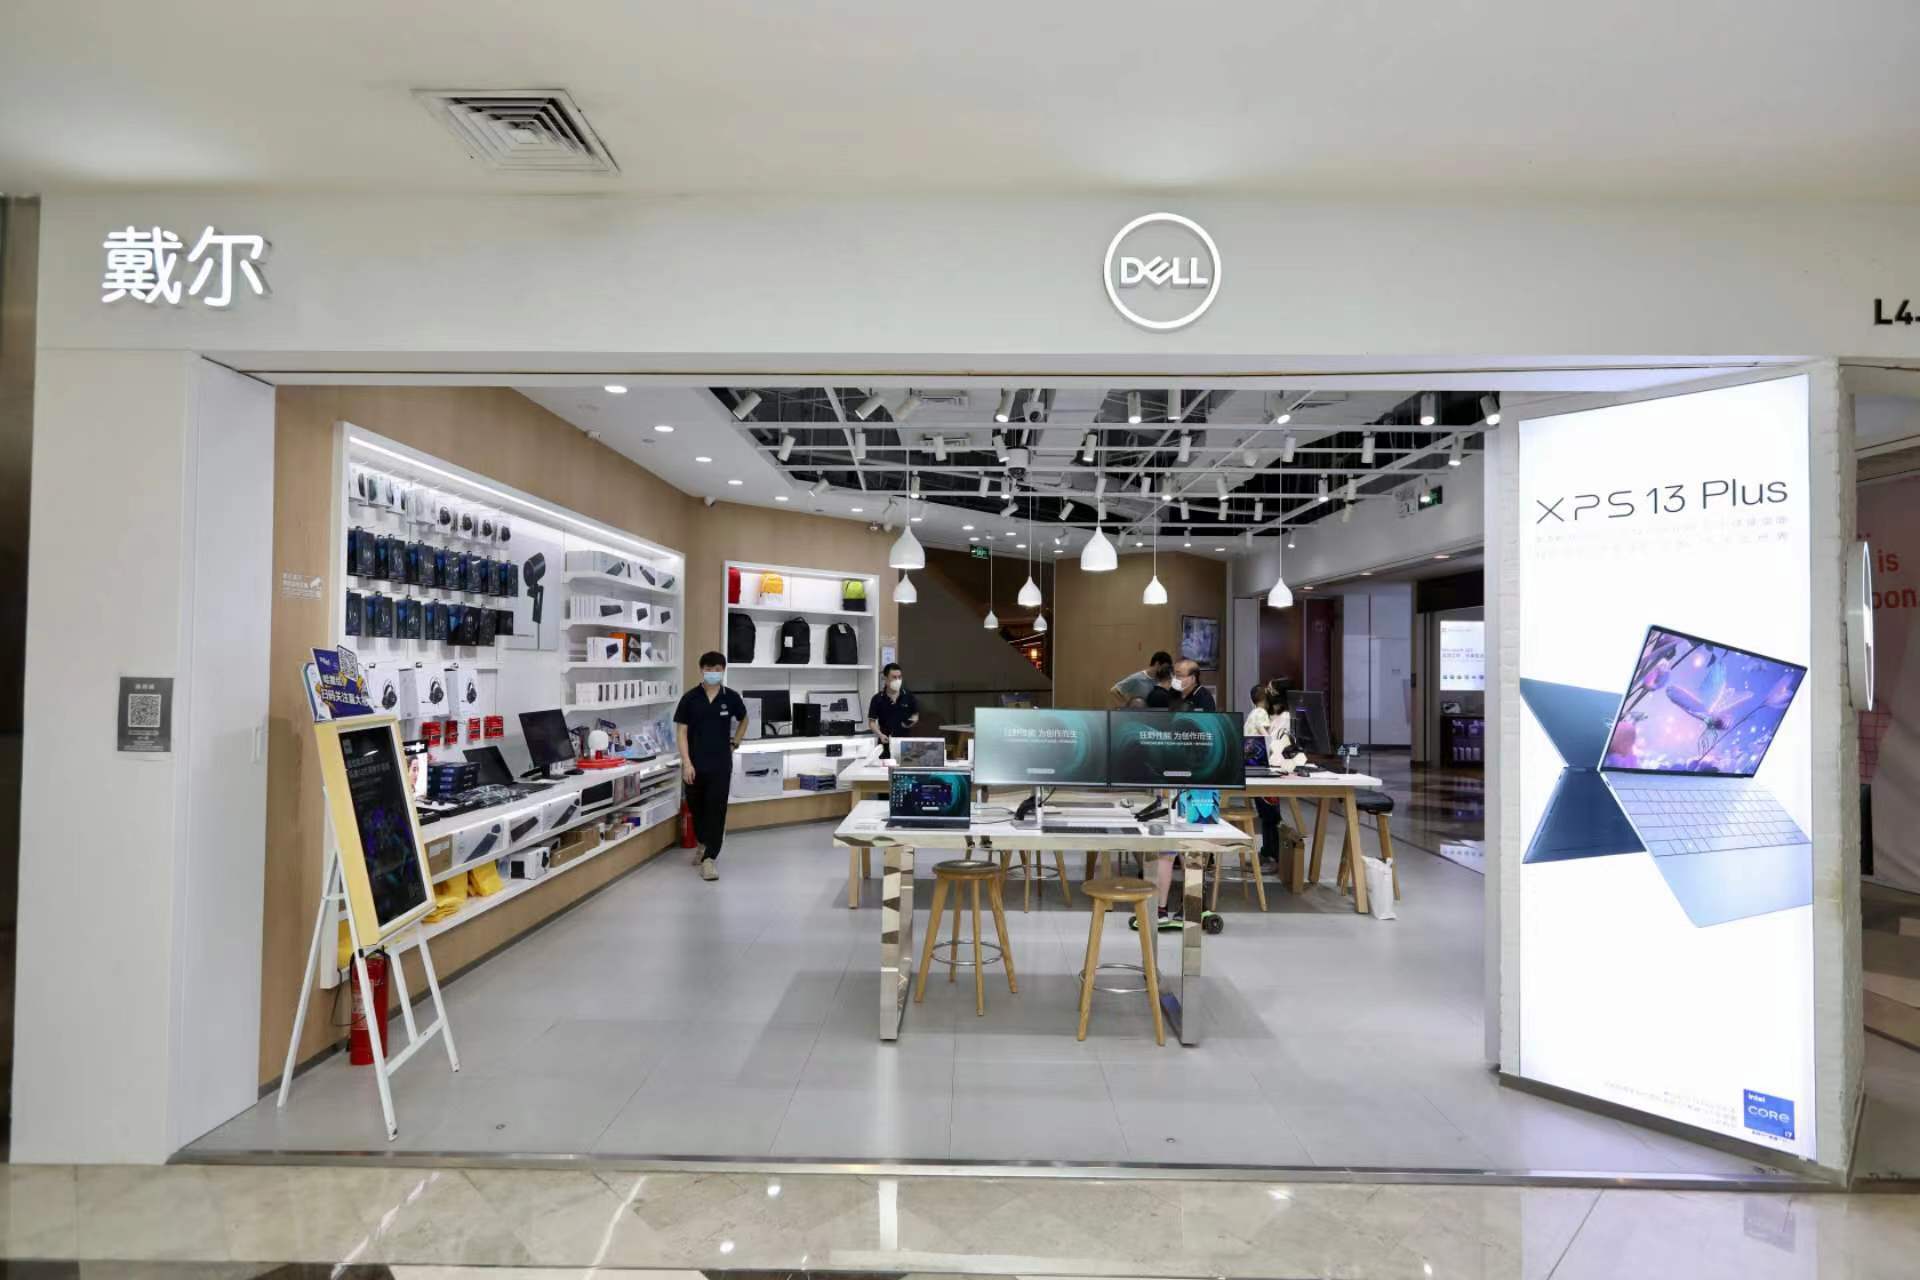 上海戴尔电脑官方旗舰店【官网可查】|认证售后维修中心